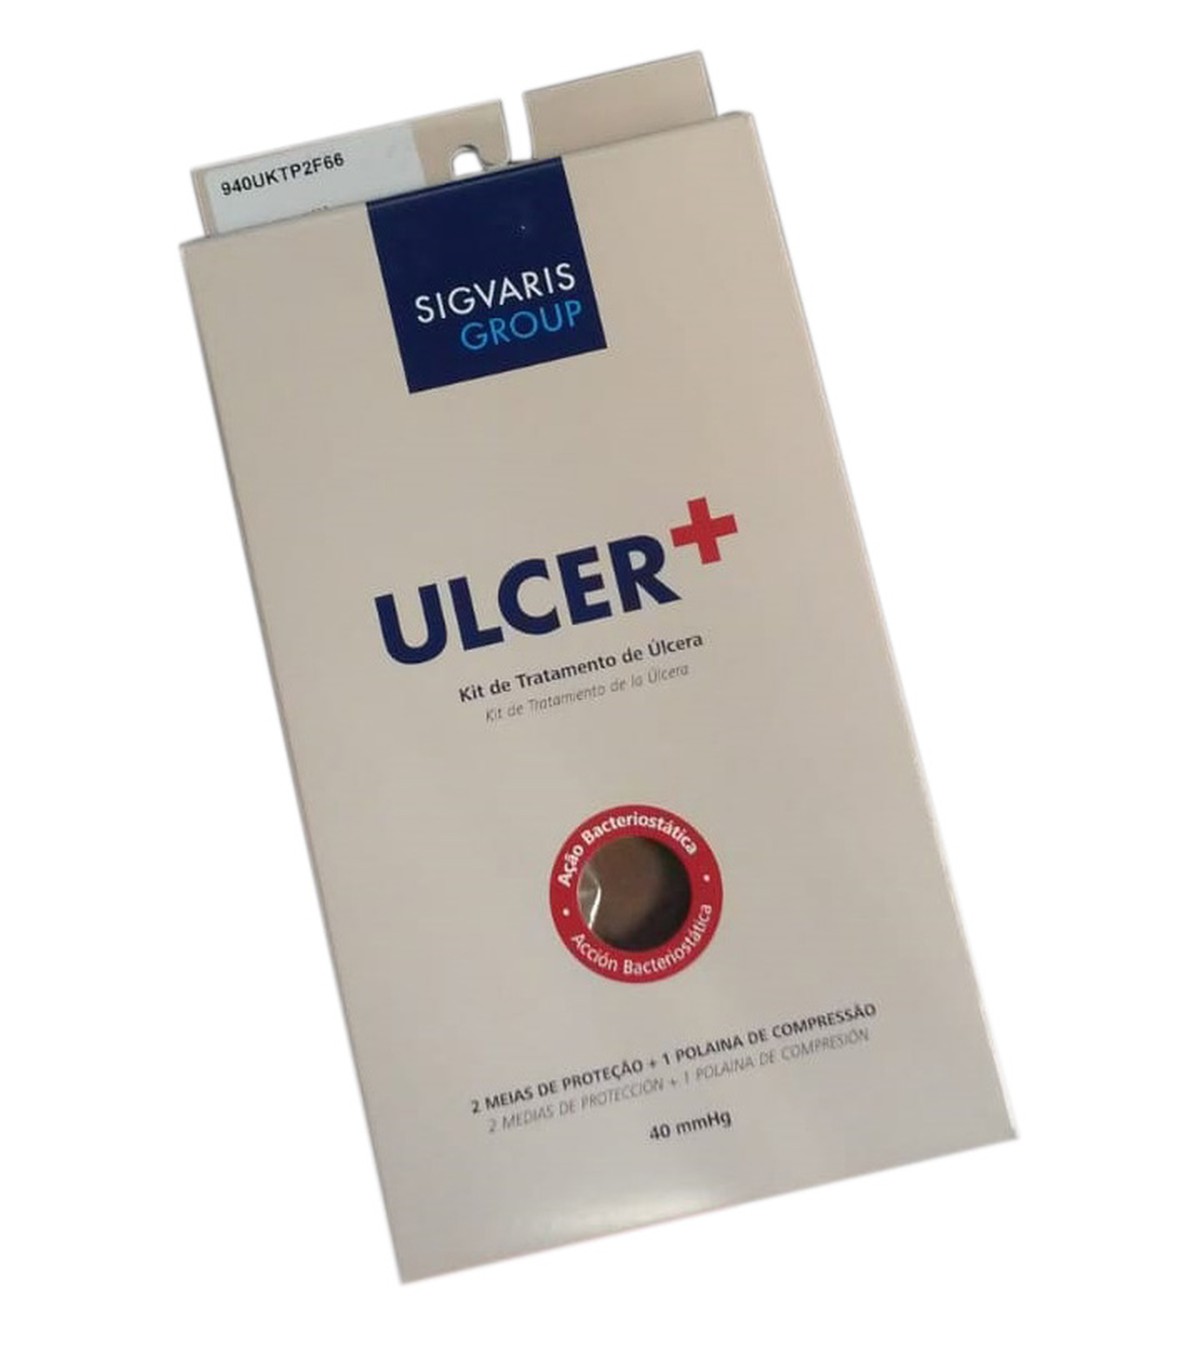 Foto do produto Ulcer+ Kit De Tratamento De Úlcera Sigvaris